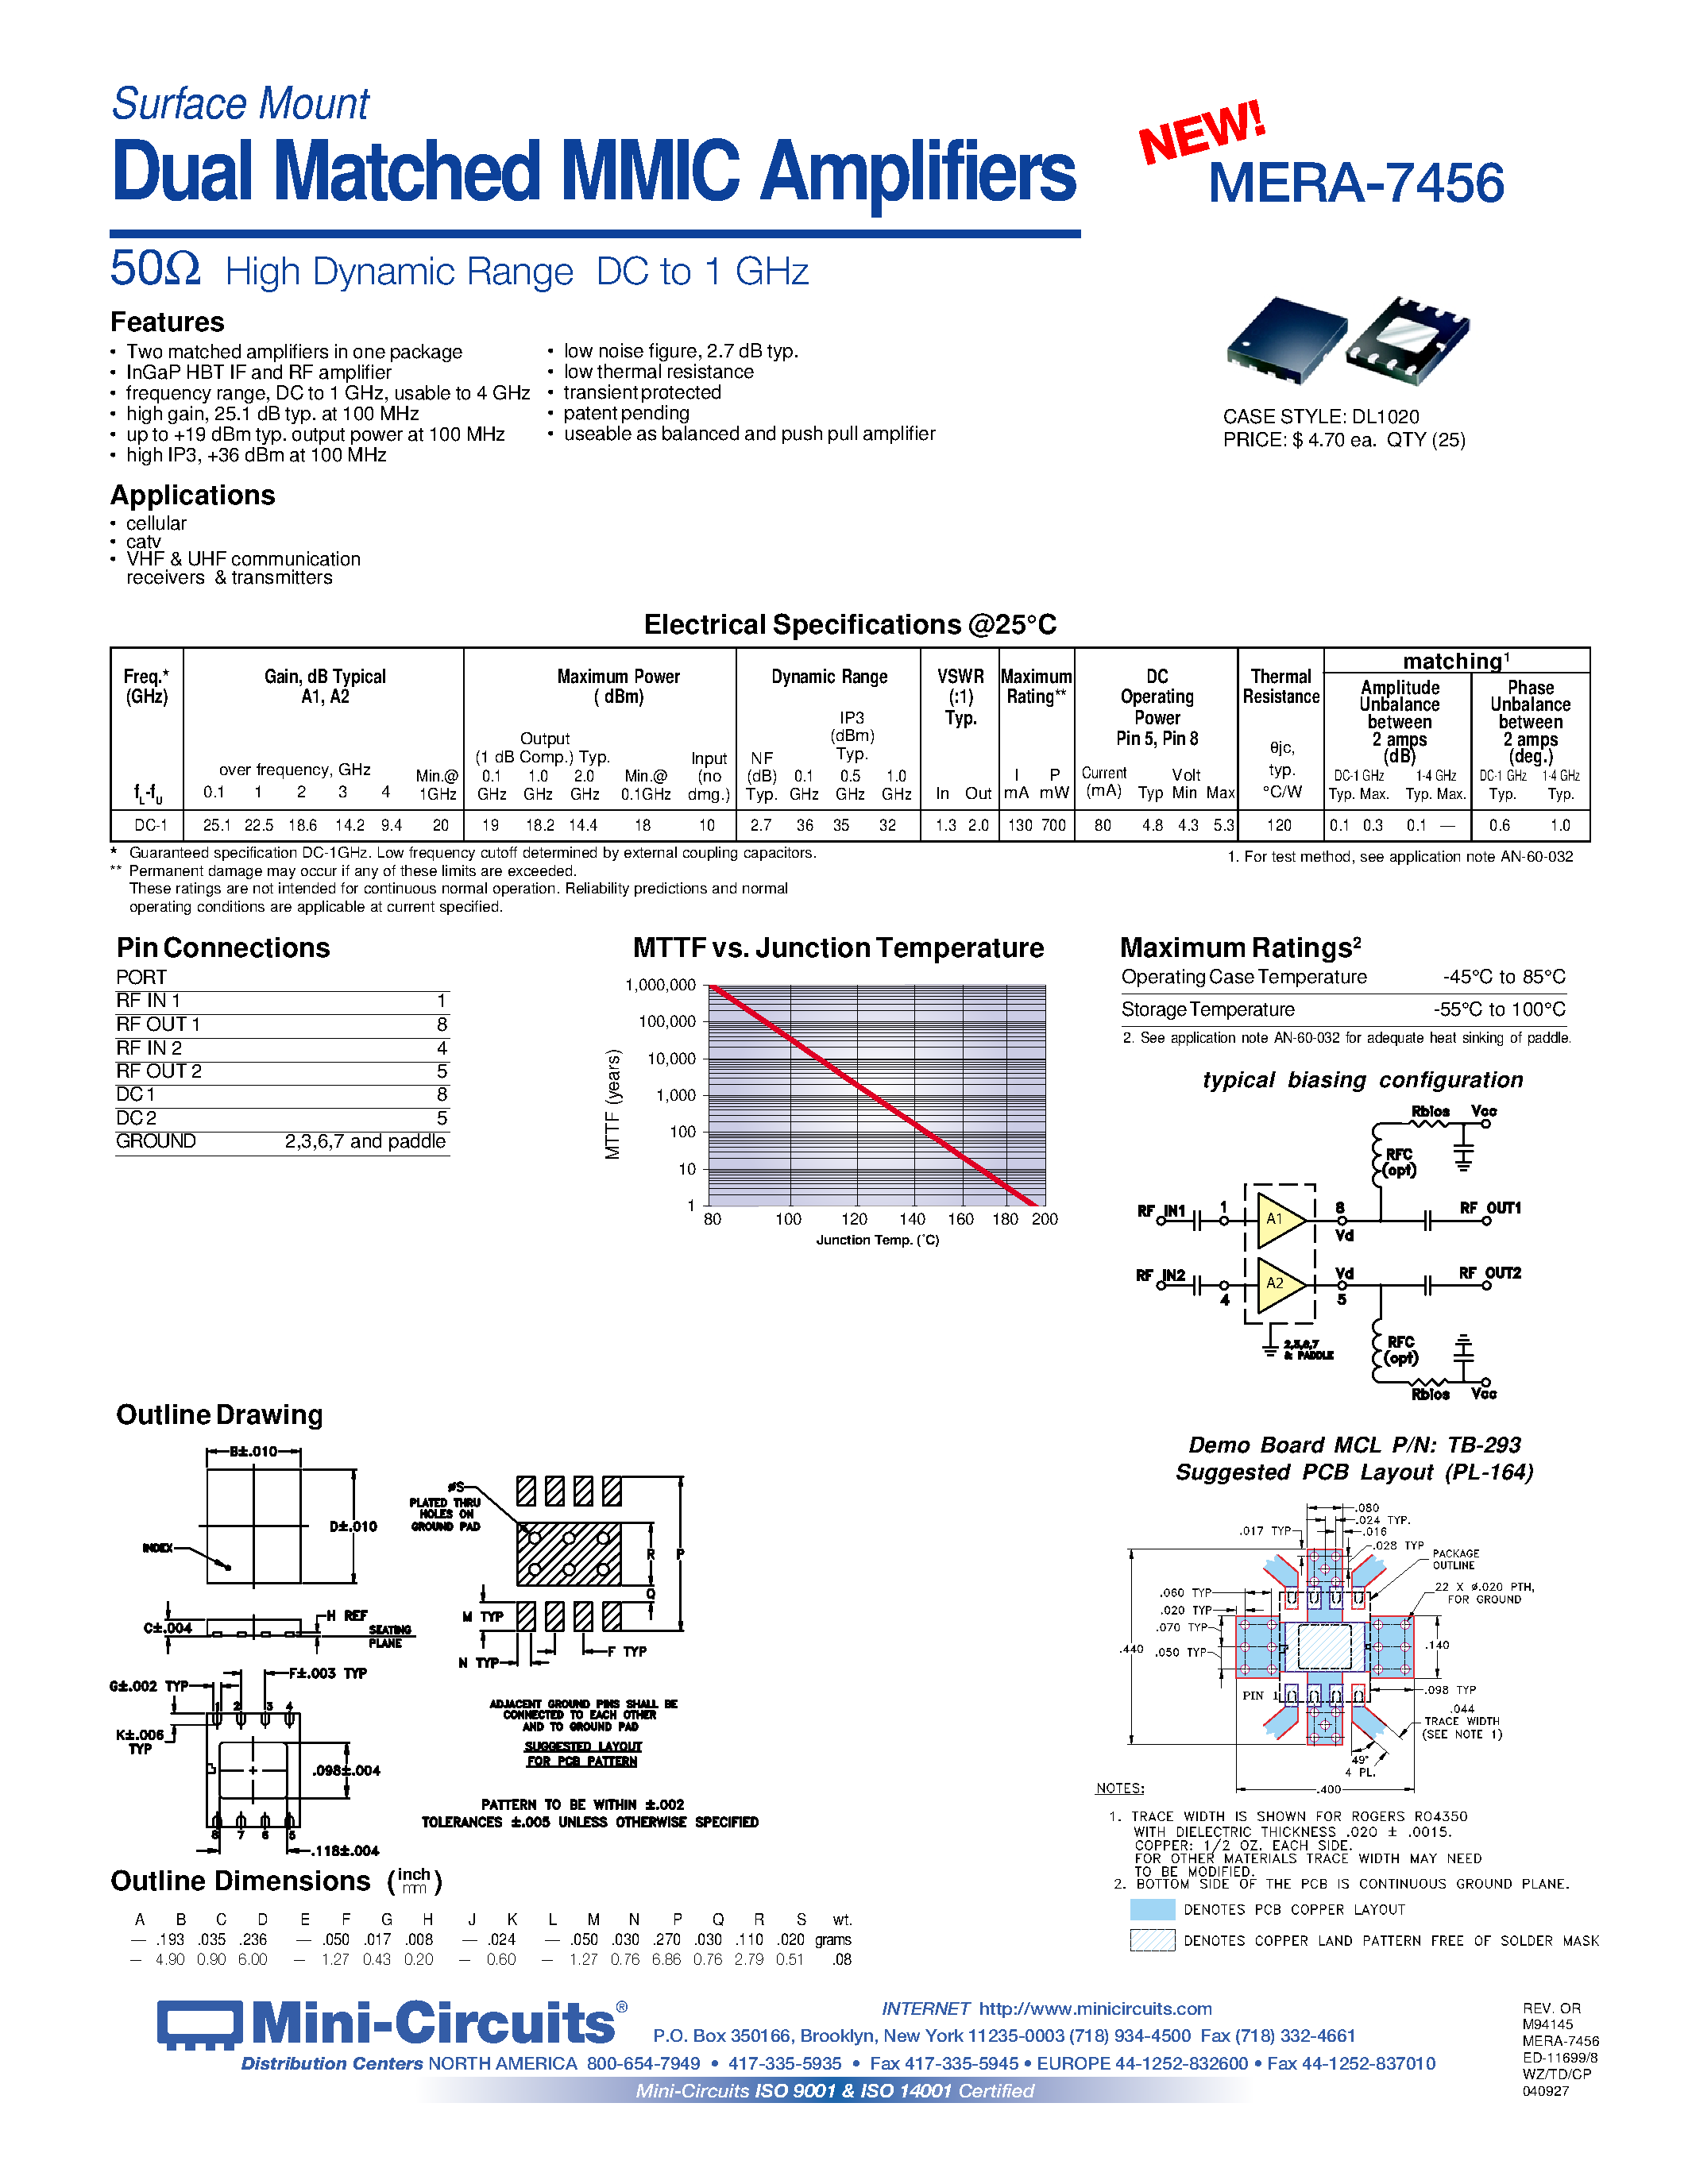 Даташит MERA-7456 - Dual Matched MMIC Amplifiers страница 1